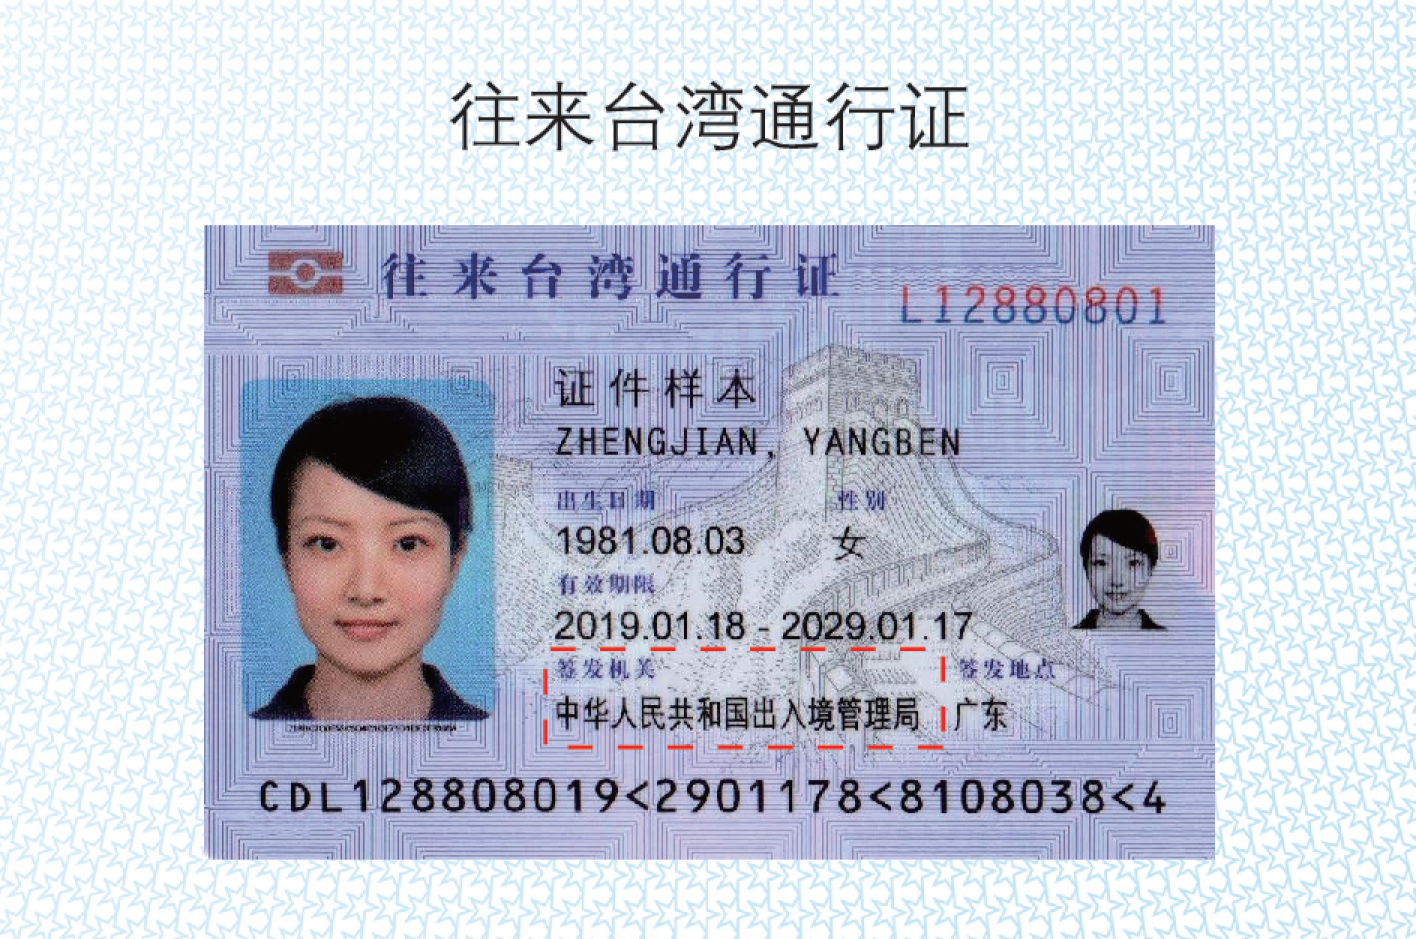 台湾通行证照片要求图片